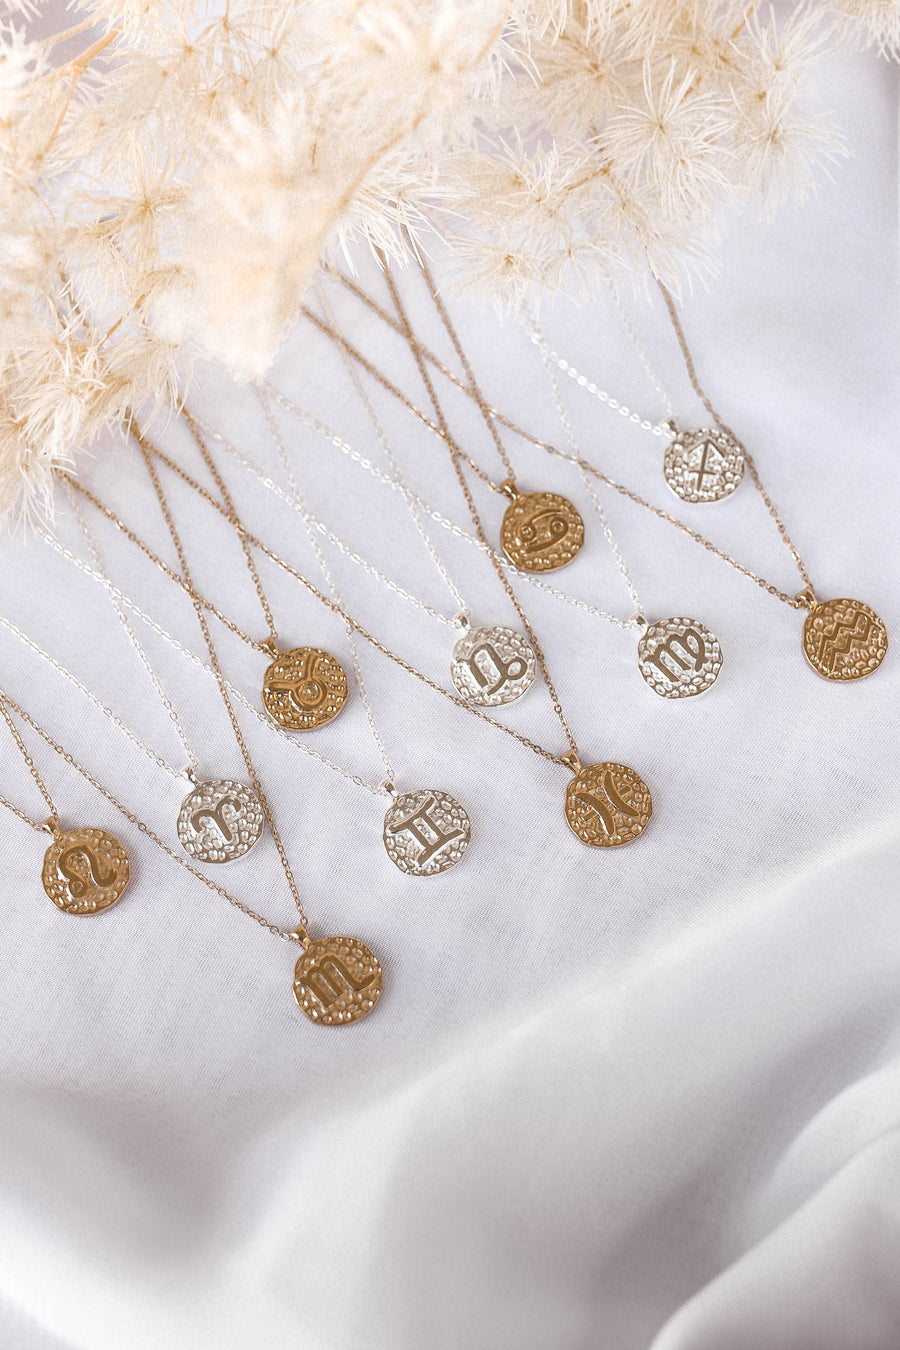 Suri - Element & Zodiac Necklaces